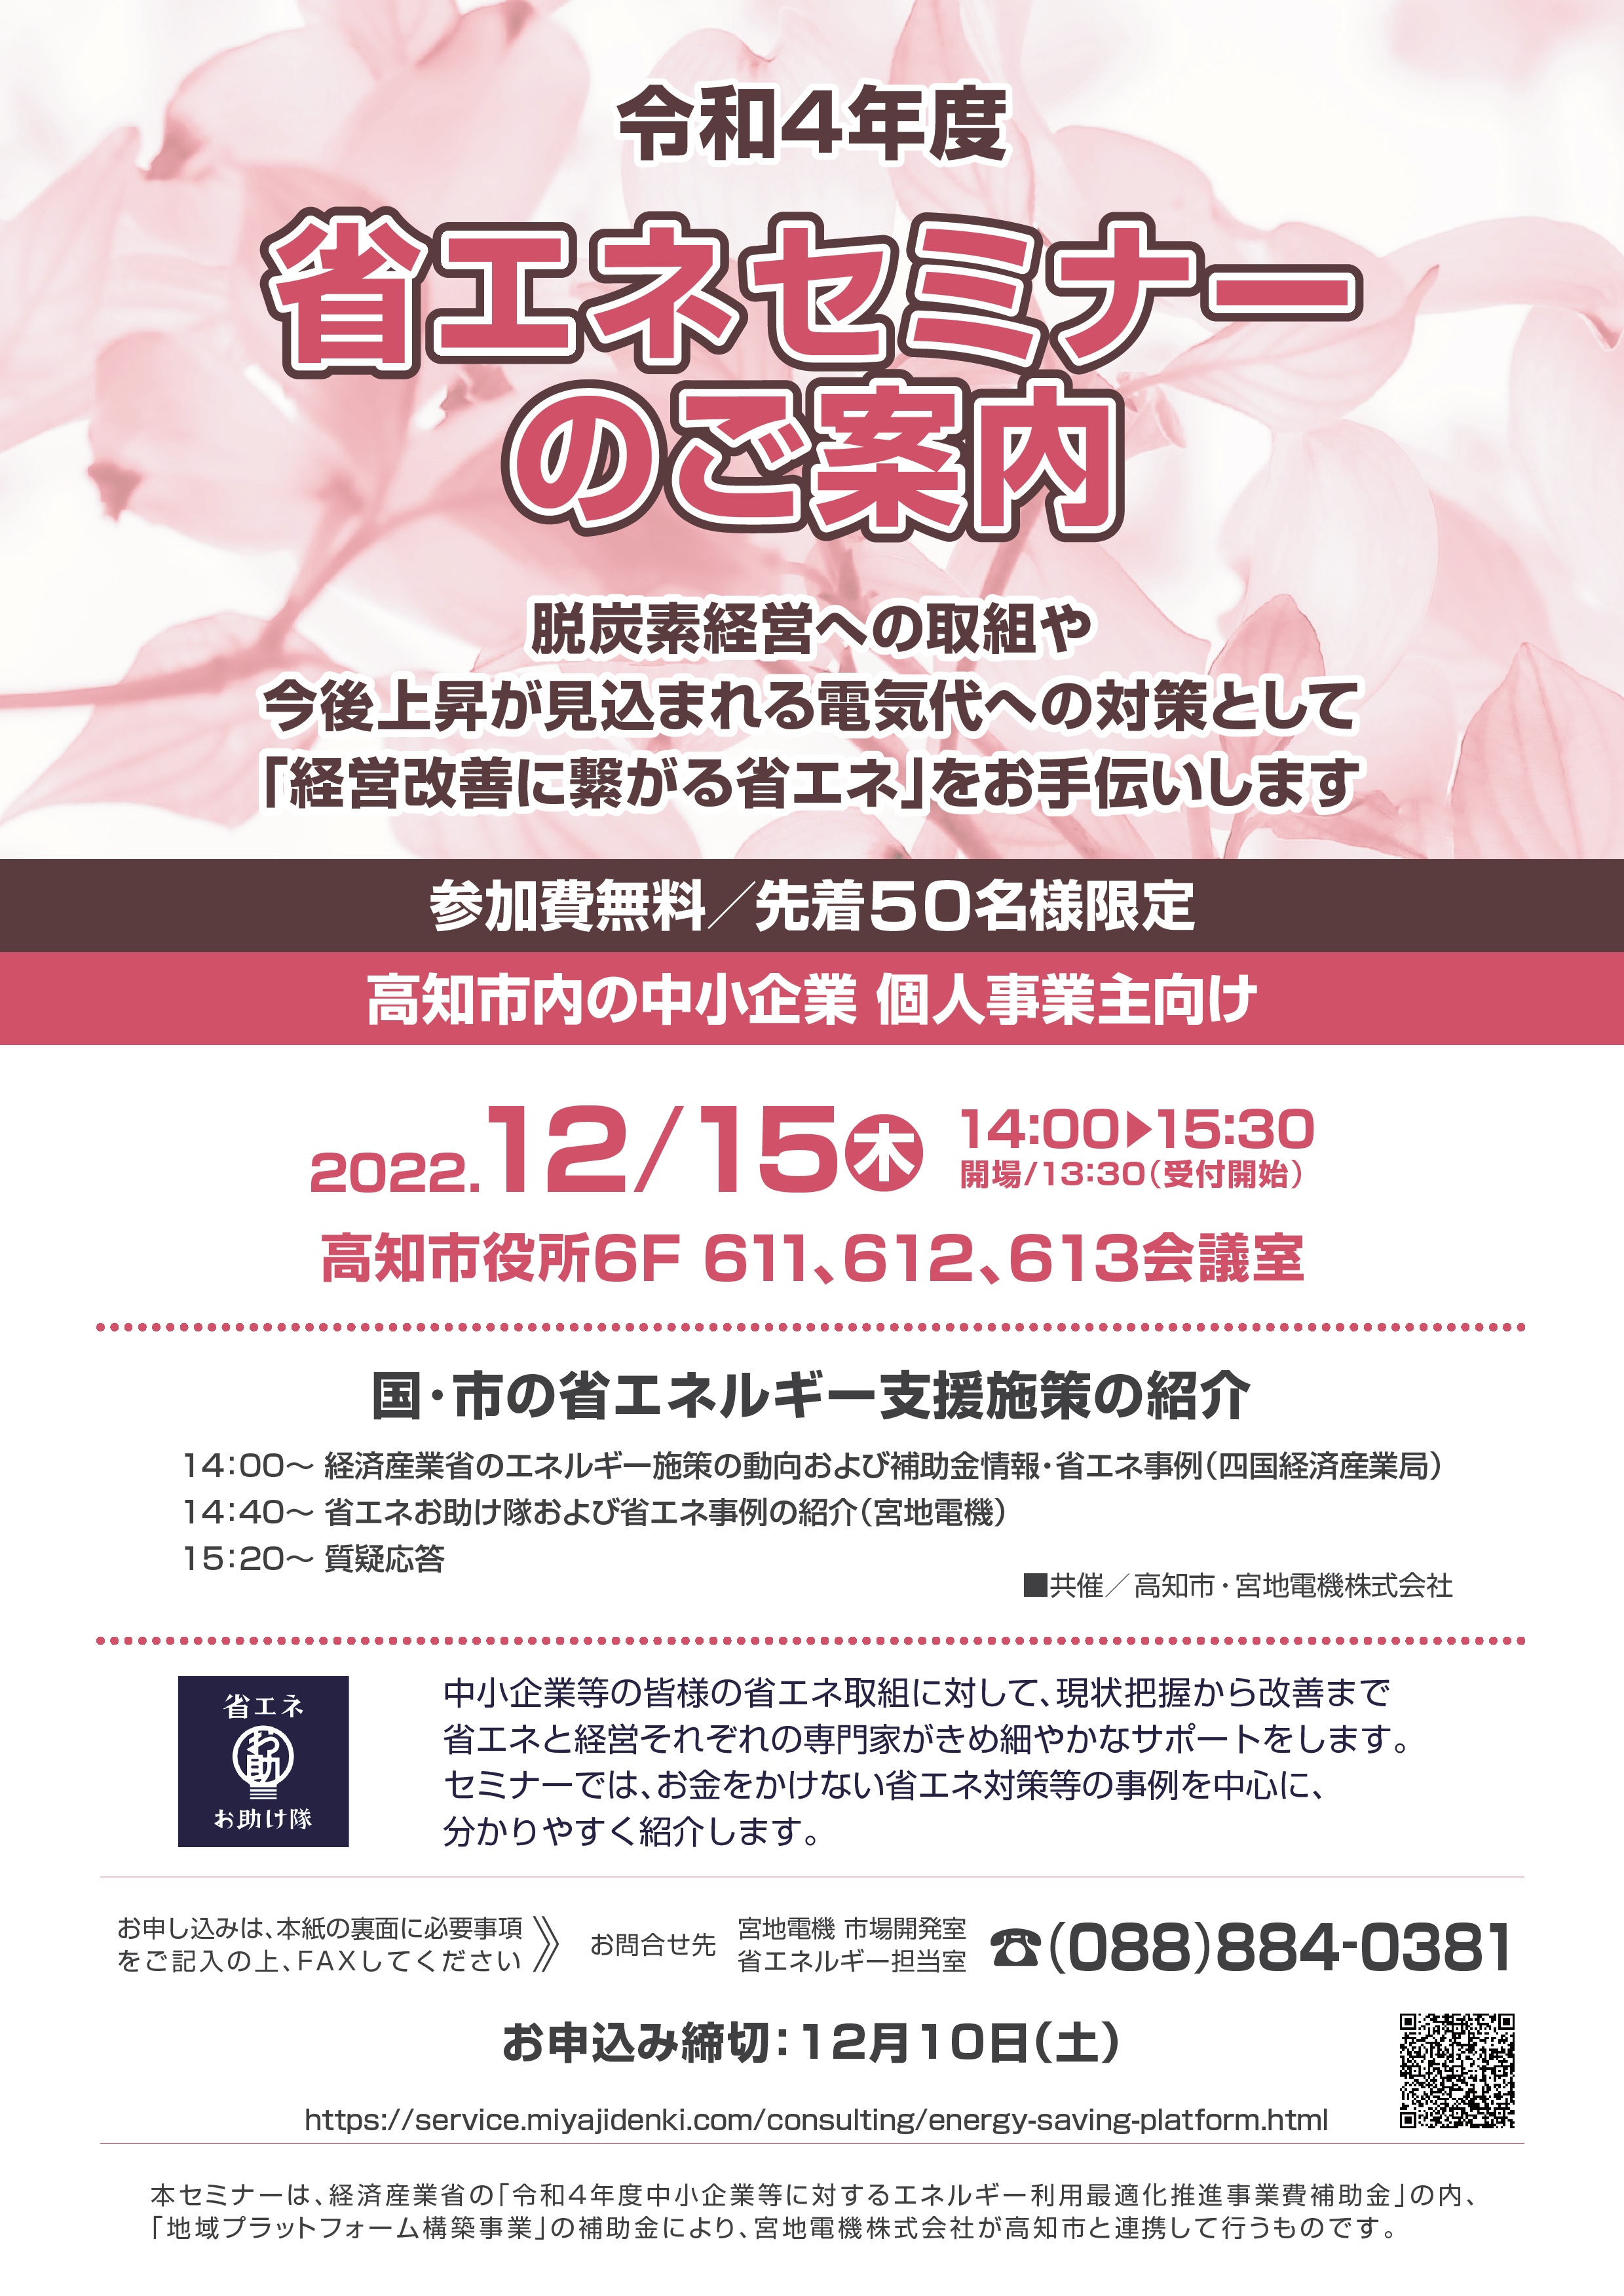 【12月15日開催】高知市省エネセミナーの開催について